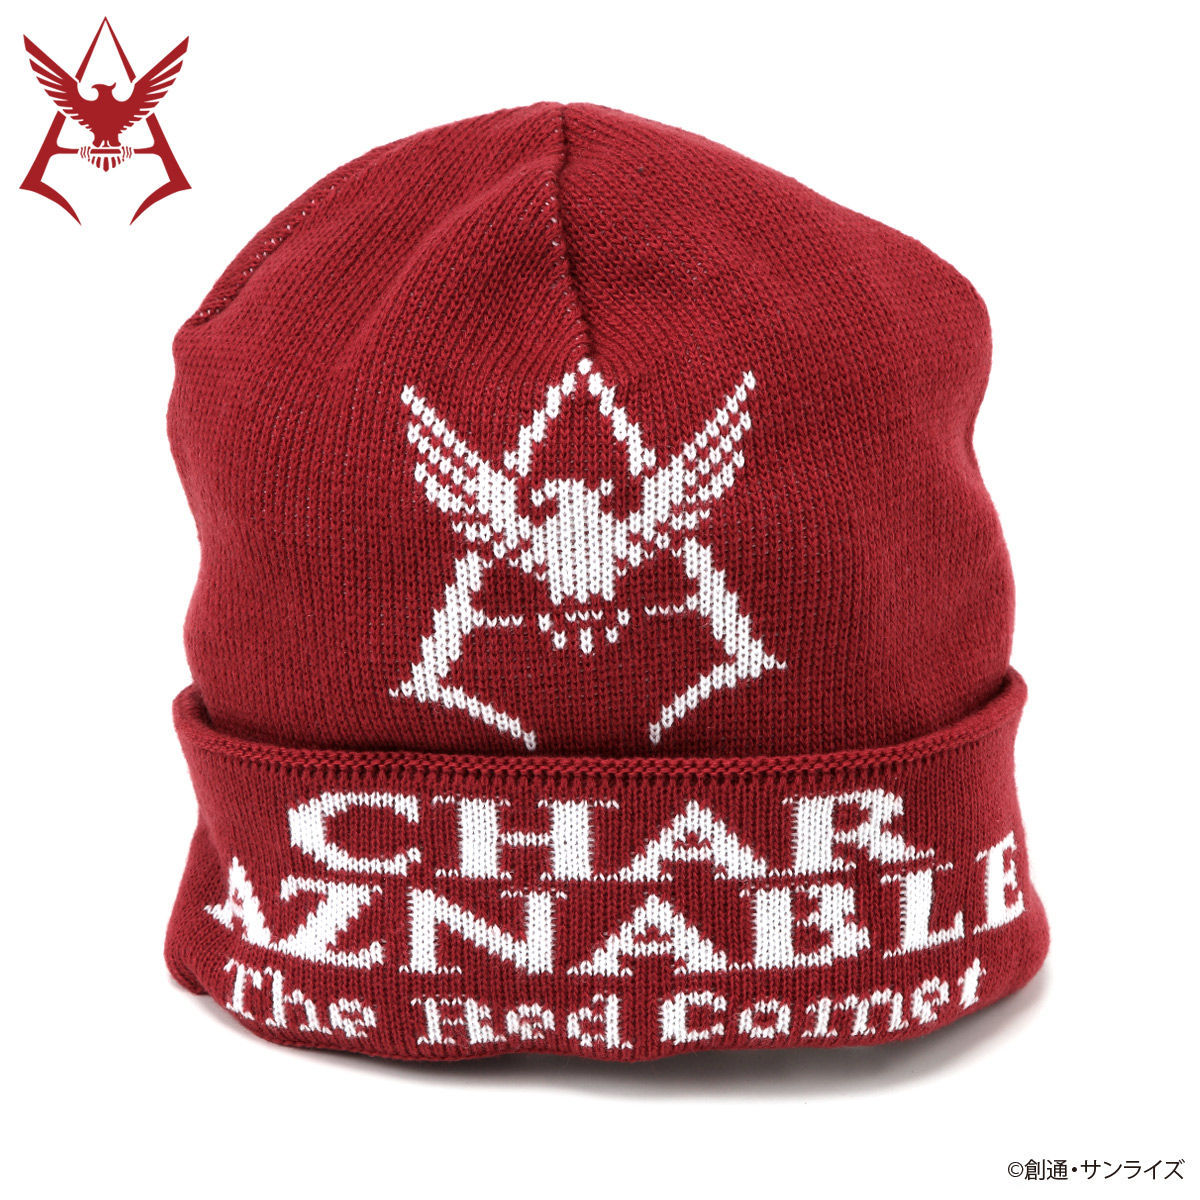 Mobile Suit Gundam Char Aznable Emblem Knit Cap